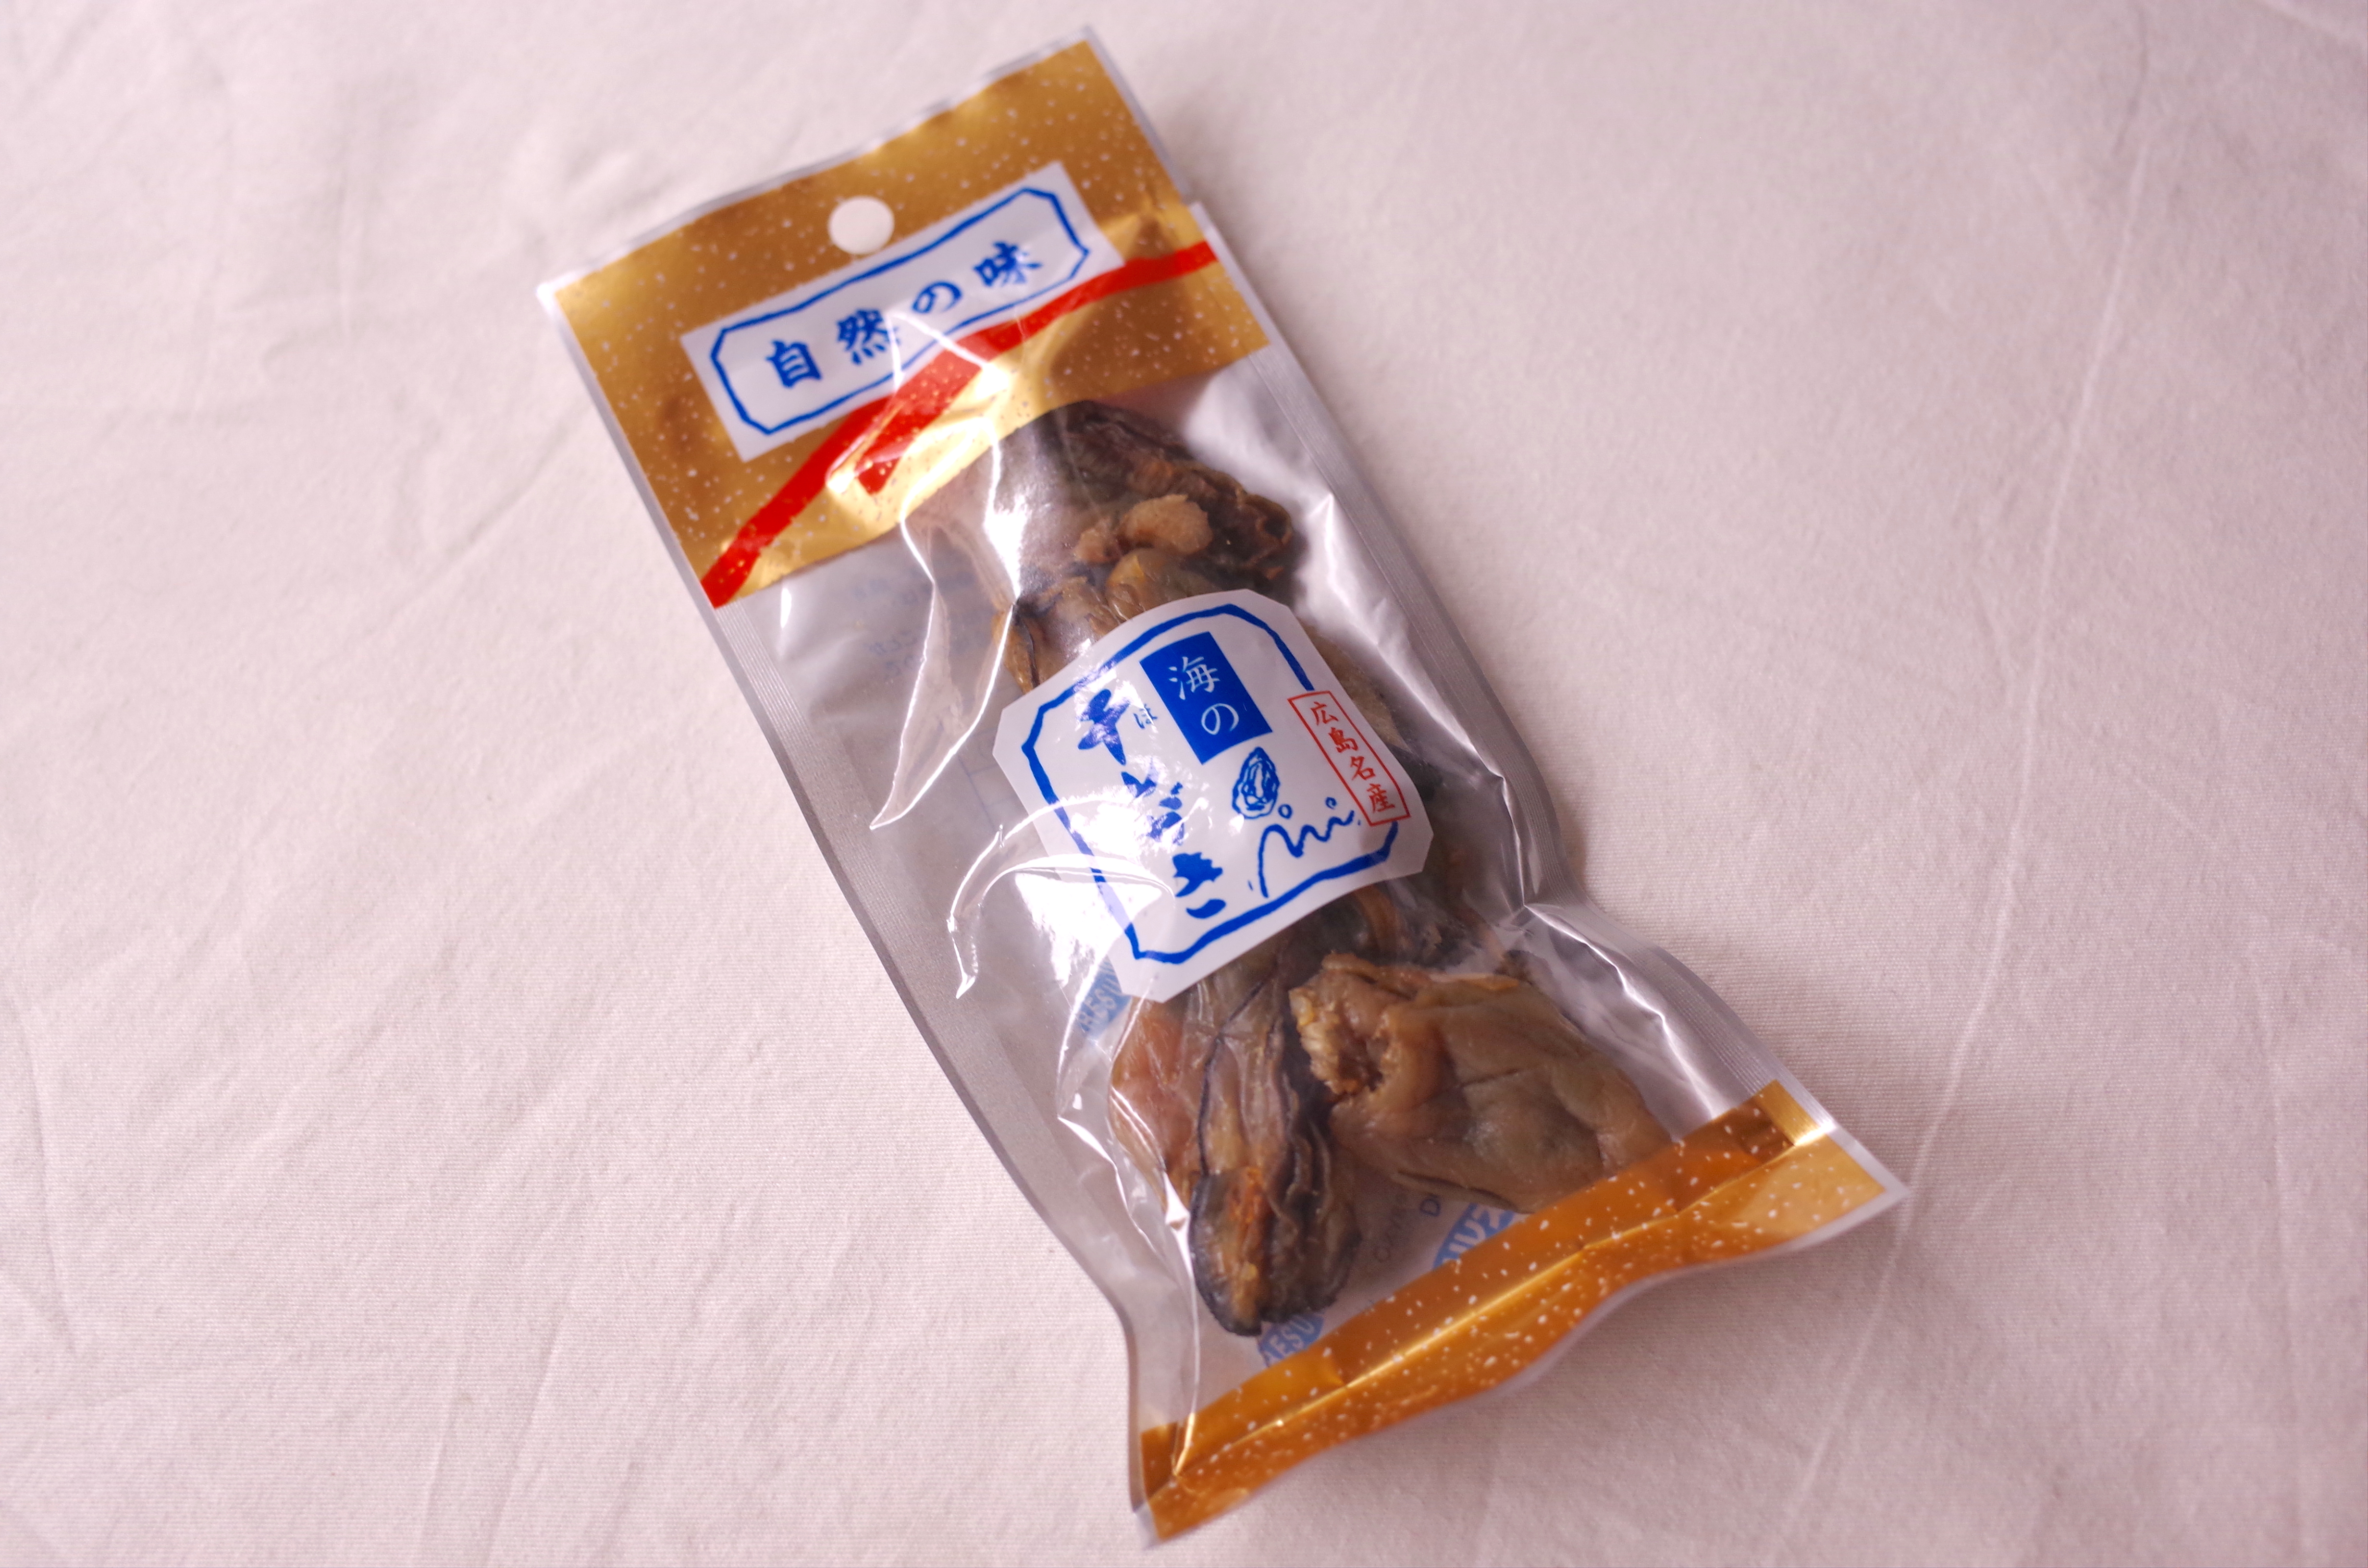 広島のお土産 広島県民に教えてもらった 干し牡蠣 はお土産どころか常備したい一品 そのままでも 炊き込みご飯でも最高です 買って応援 Pouch ポーチ